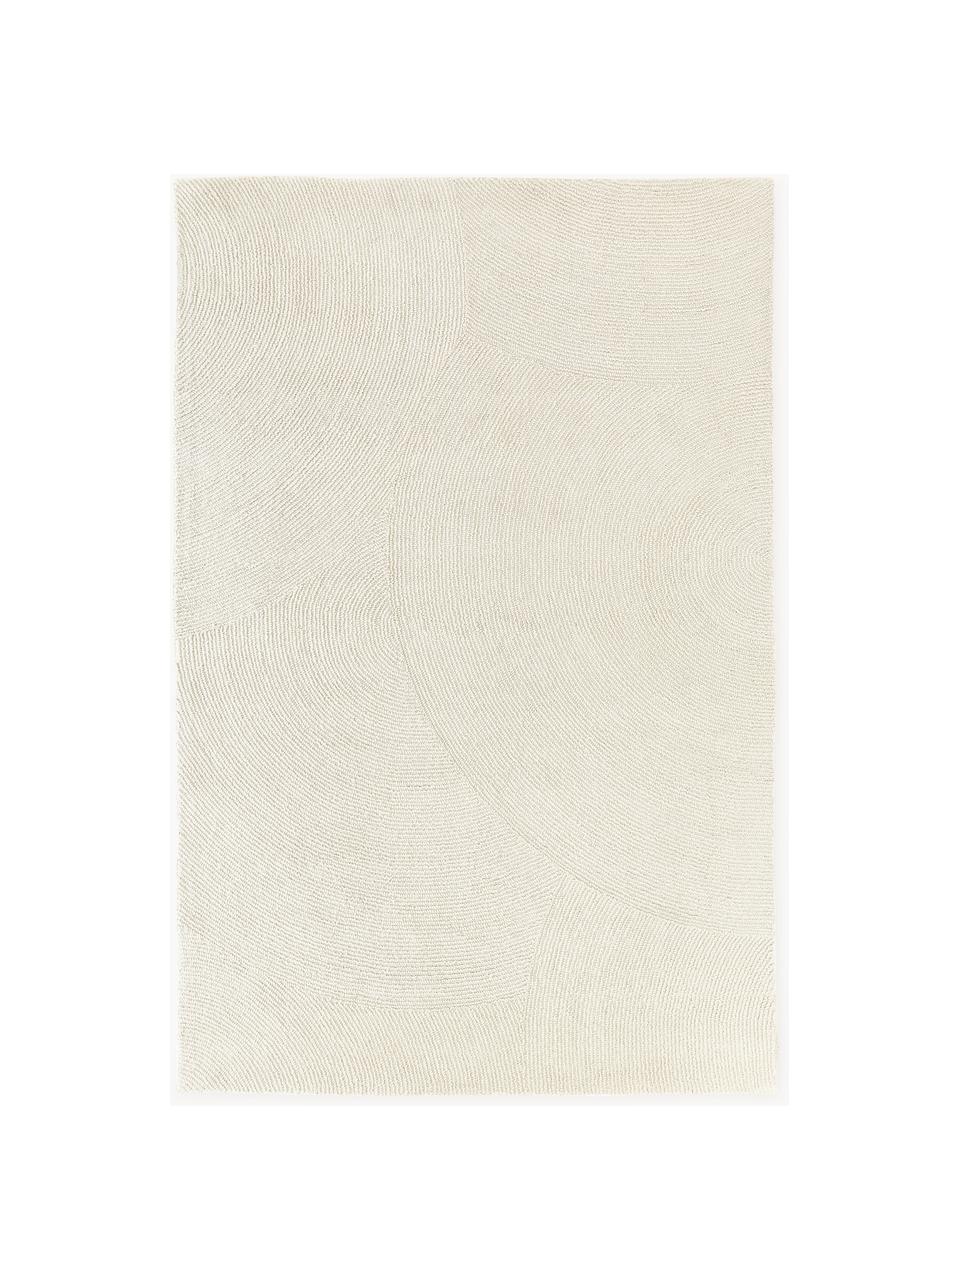 Tapis à poils ras tufté main, en matériaux recyclés Eleni, Blanc cassé, larg. 120 x long. 180 cm (taille S)